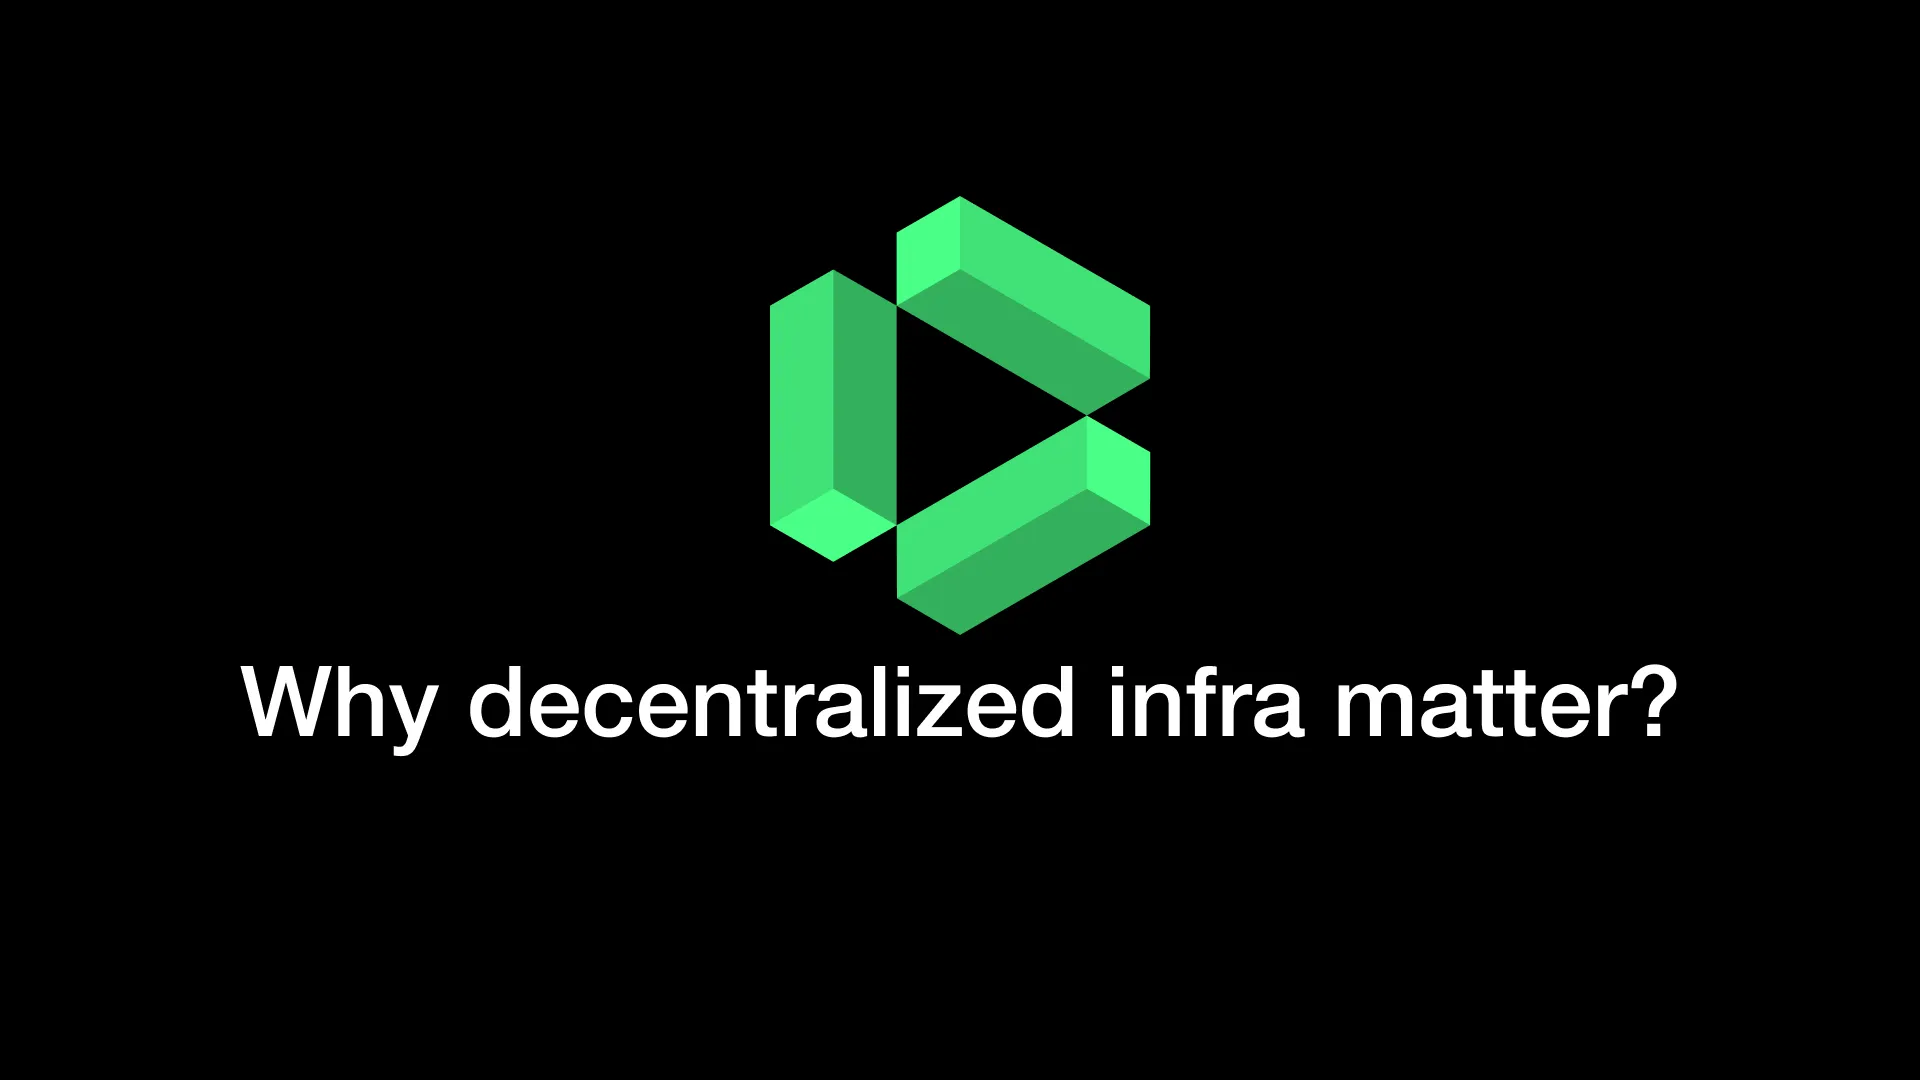 drpc-introduction-decentralization